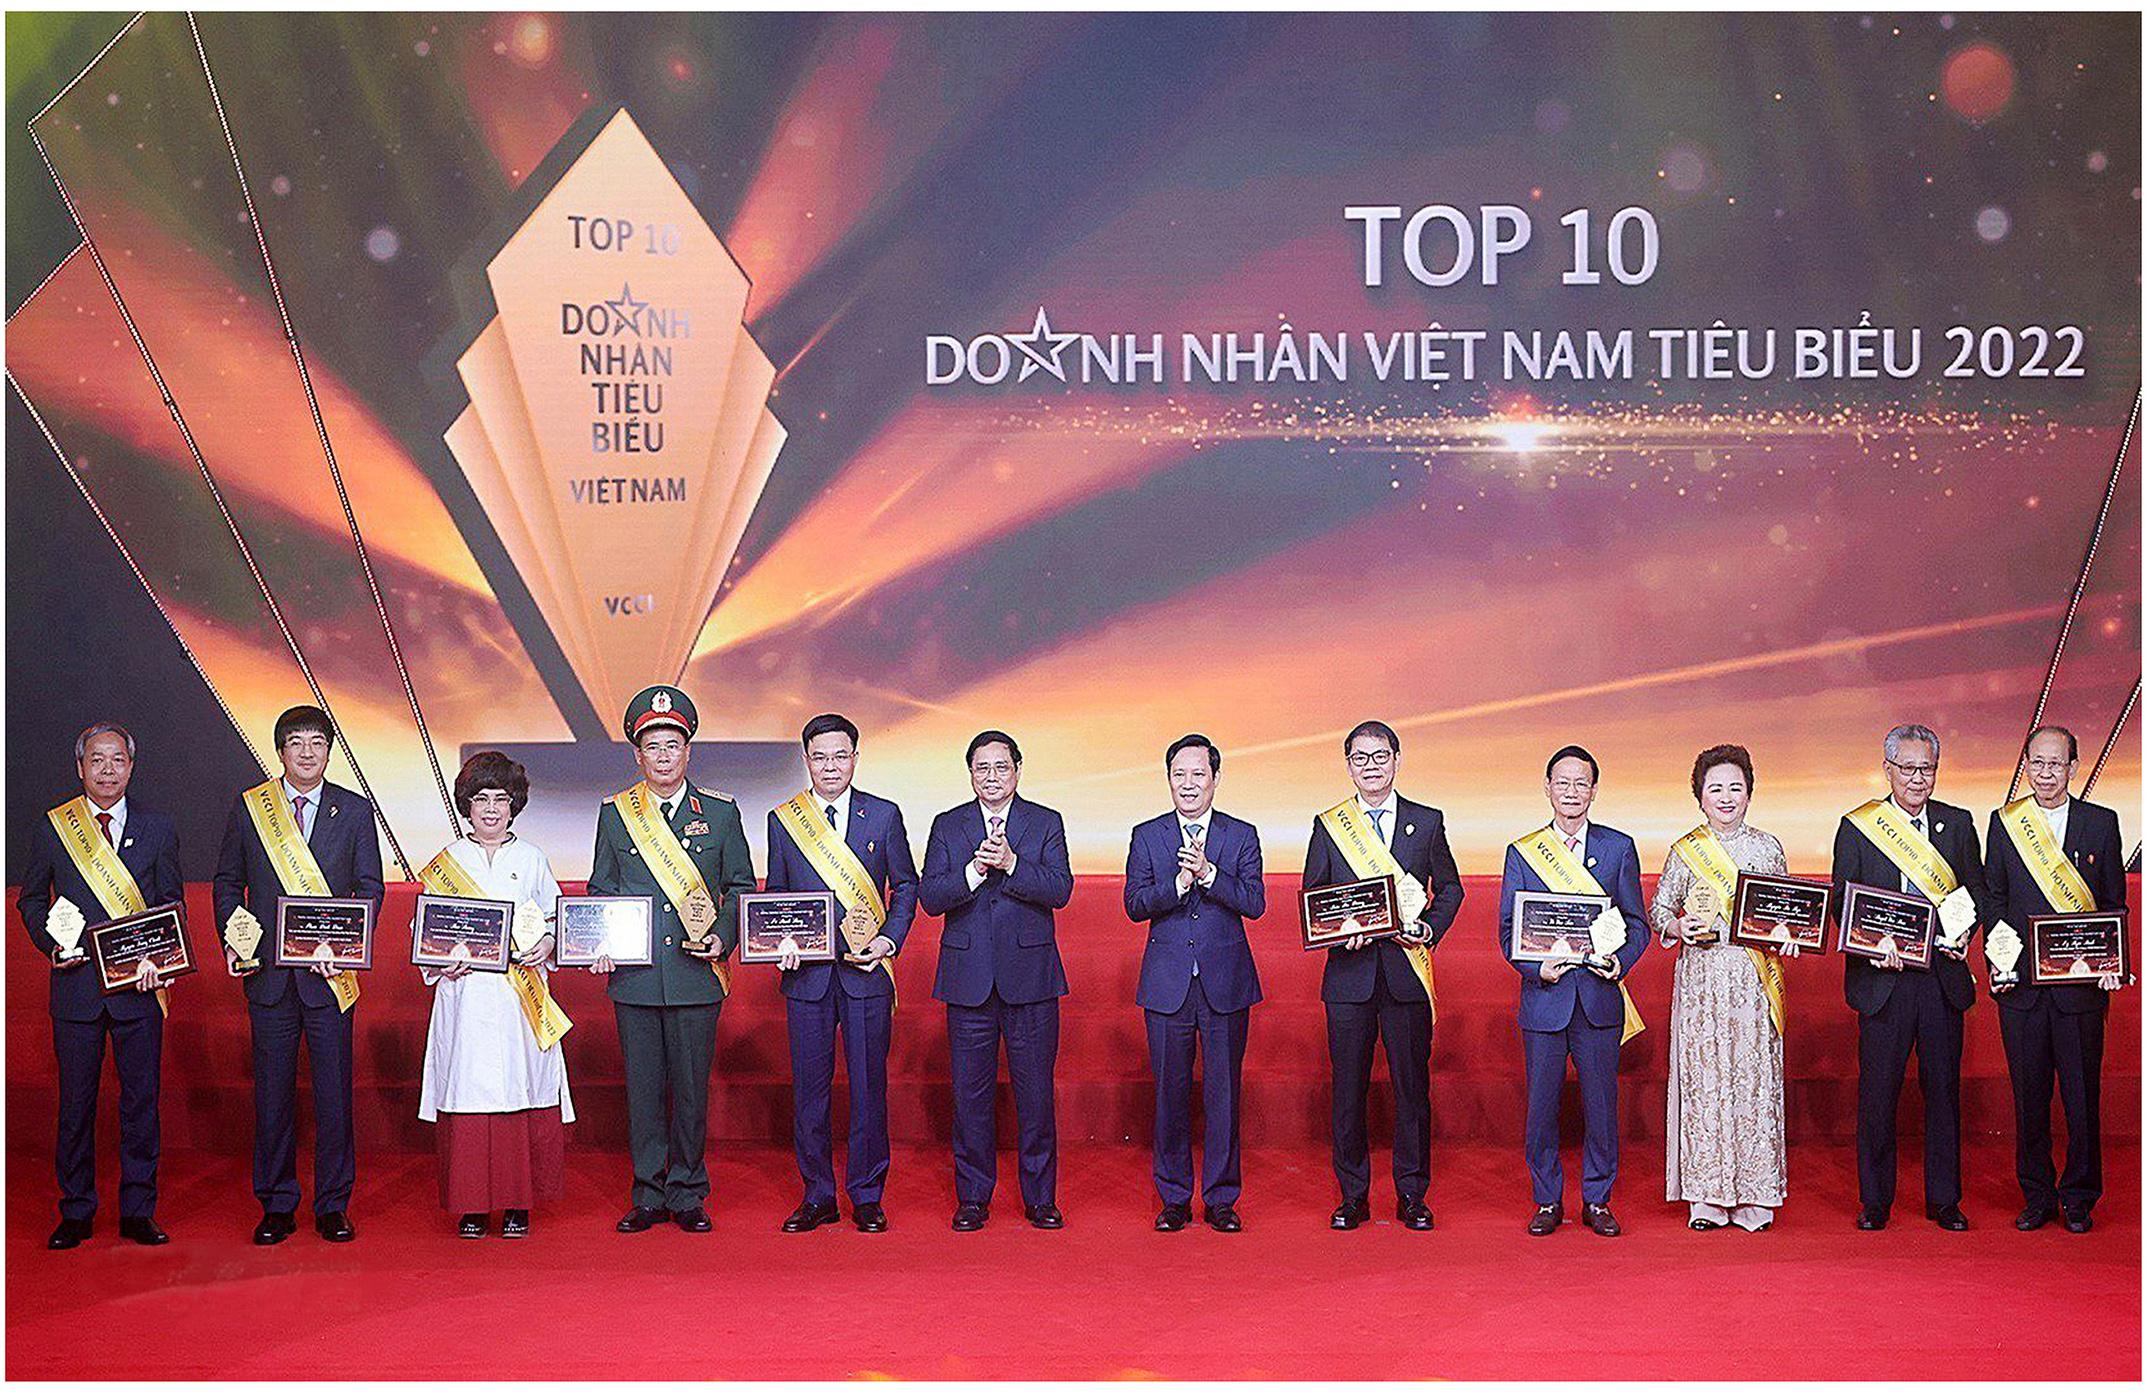 Top 10 Doanh nhân Việt Nam tiêu biểu năm 2022